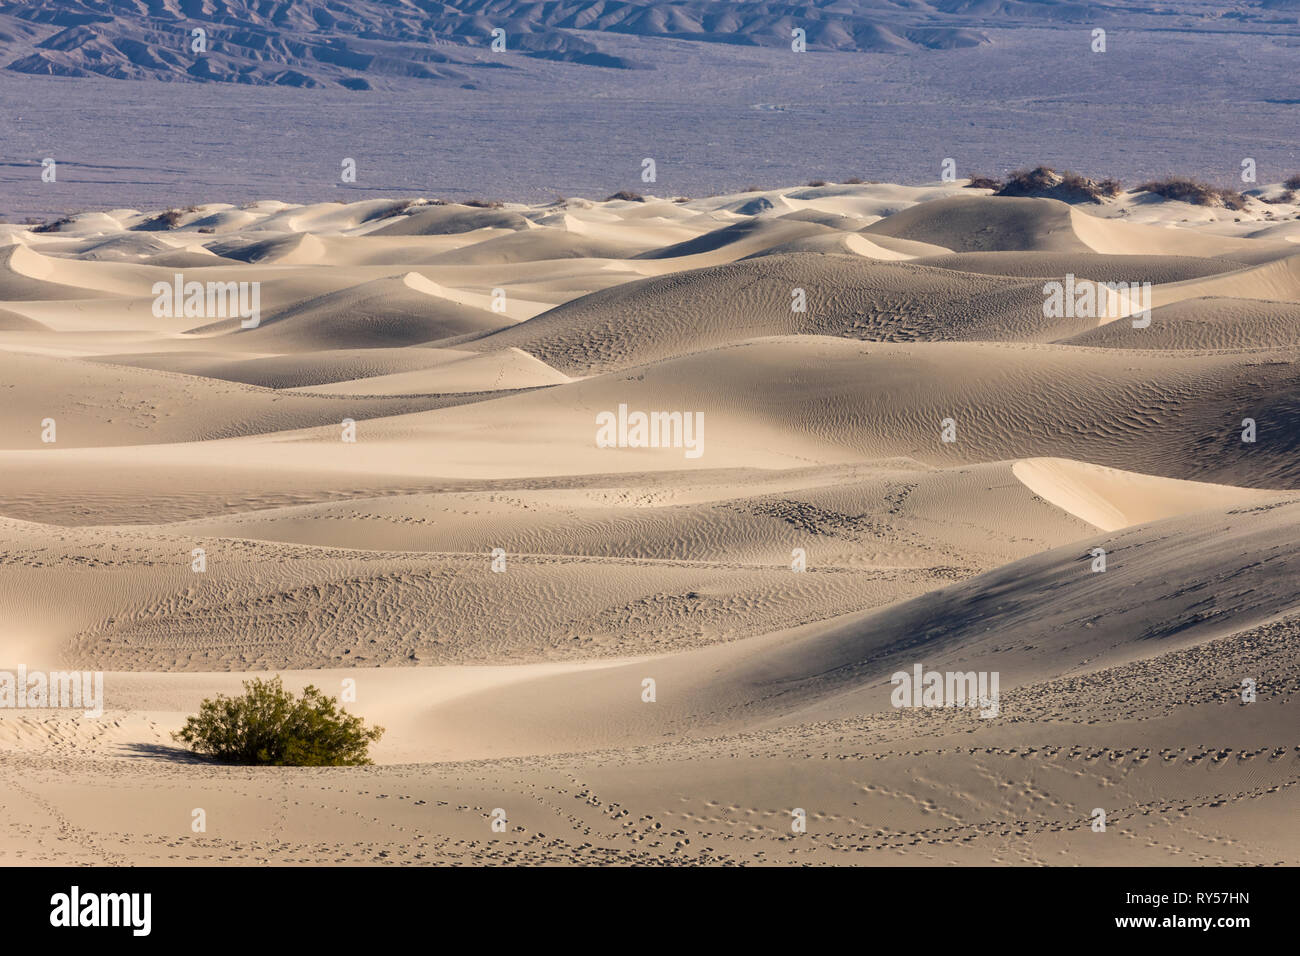 Les dunes de sable de Mesquite Flat sont une vaste zone de dunes de sable bordées de montagnes dans la vallée de la mort et un lieu touristique de choix pour les randonneurs et les photographes. Banque D'Images